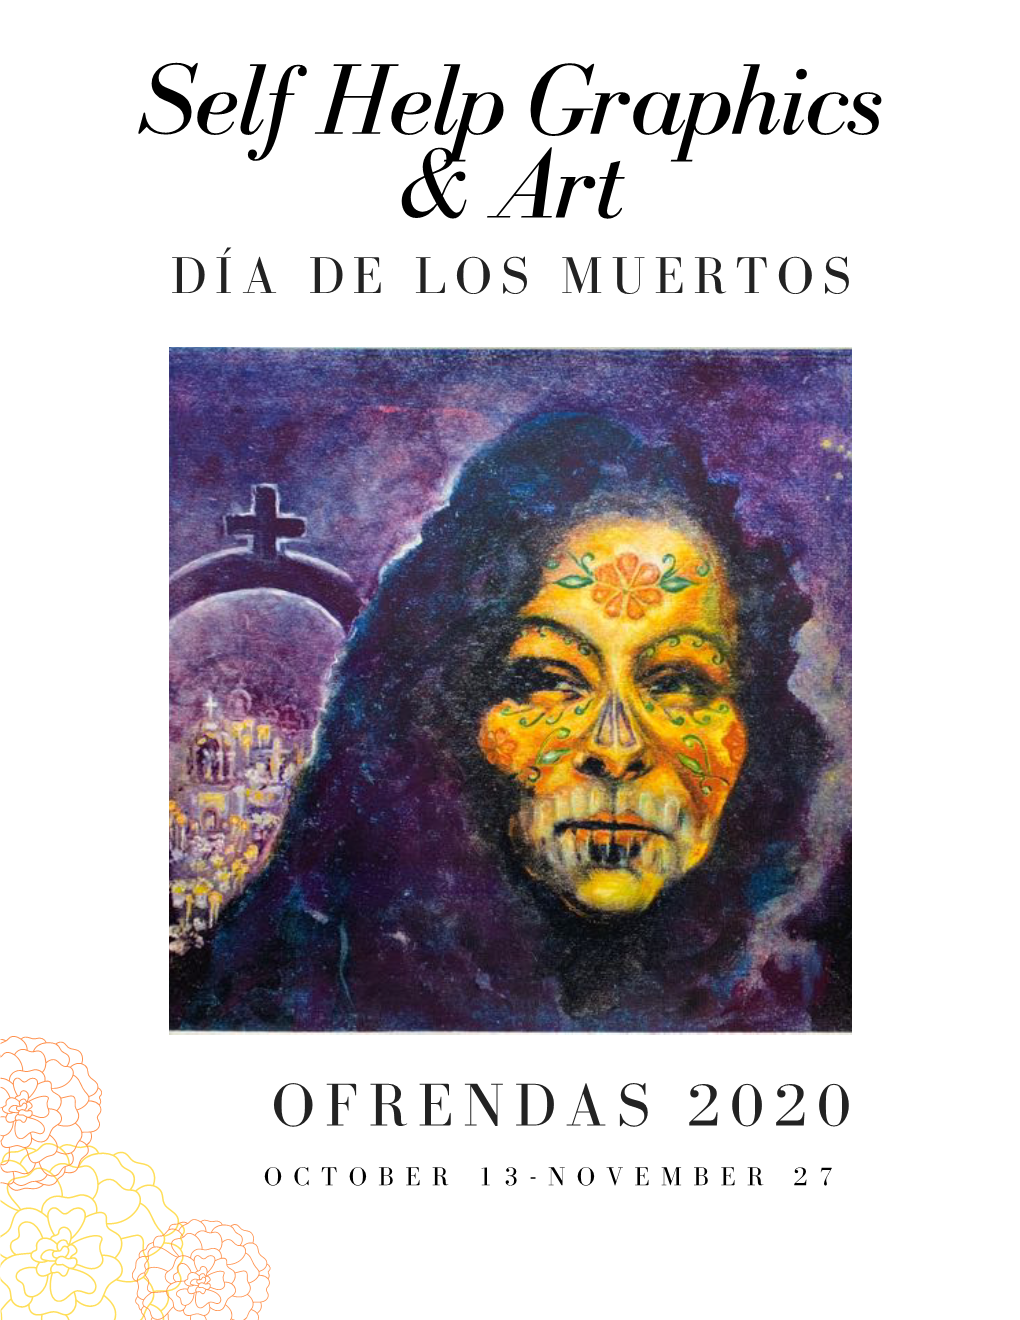 Dia De Los Muertos Exhibition Ofrendas 2020 October 13 - November 27, 2020